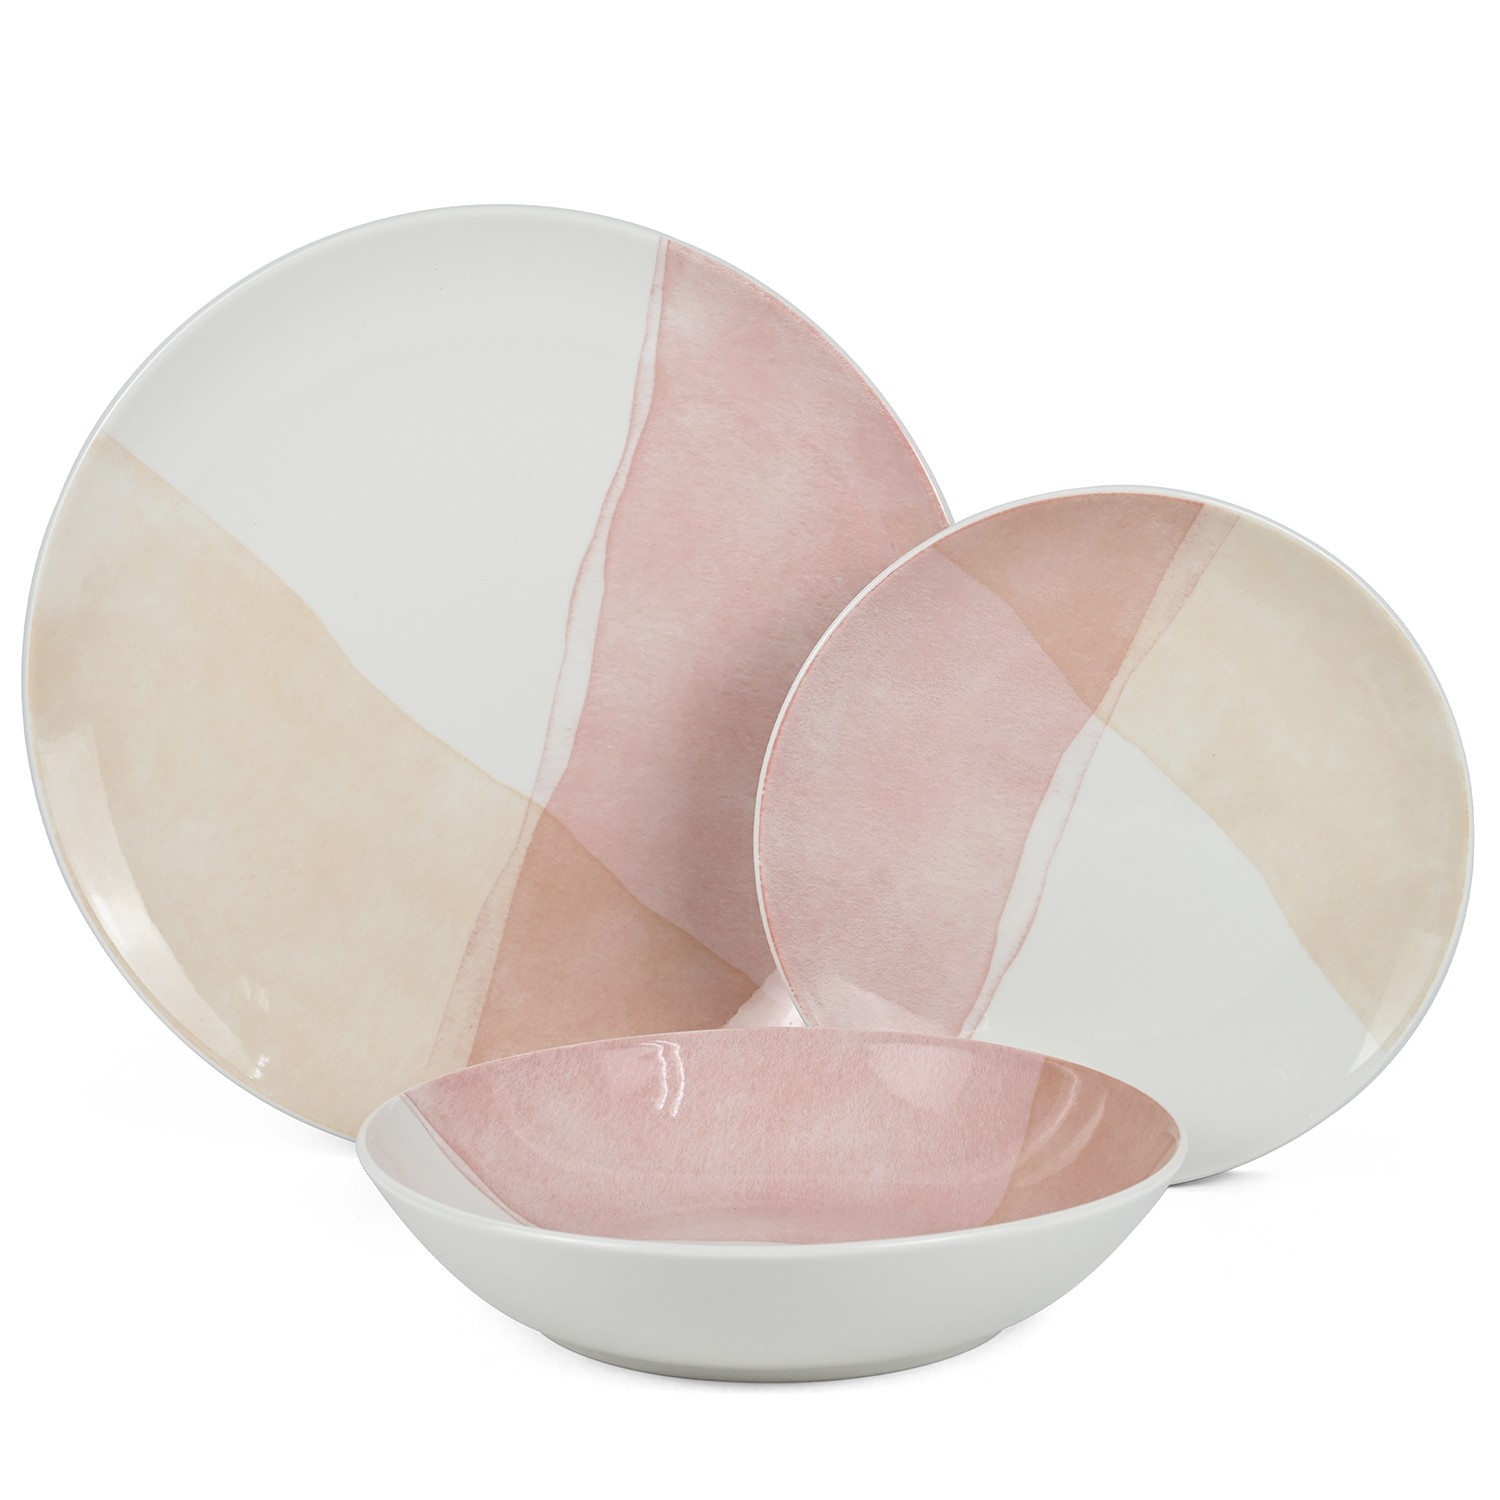 35481-vajilla-porcelana-rosa-18-piezas.jfif